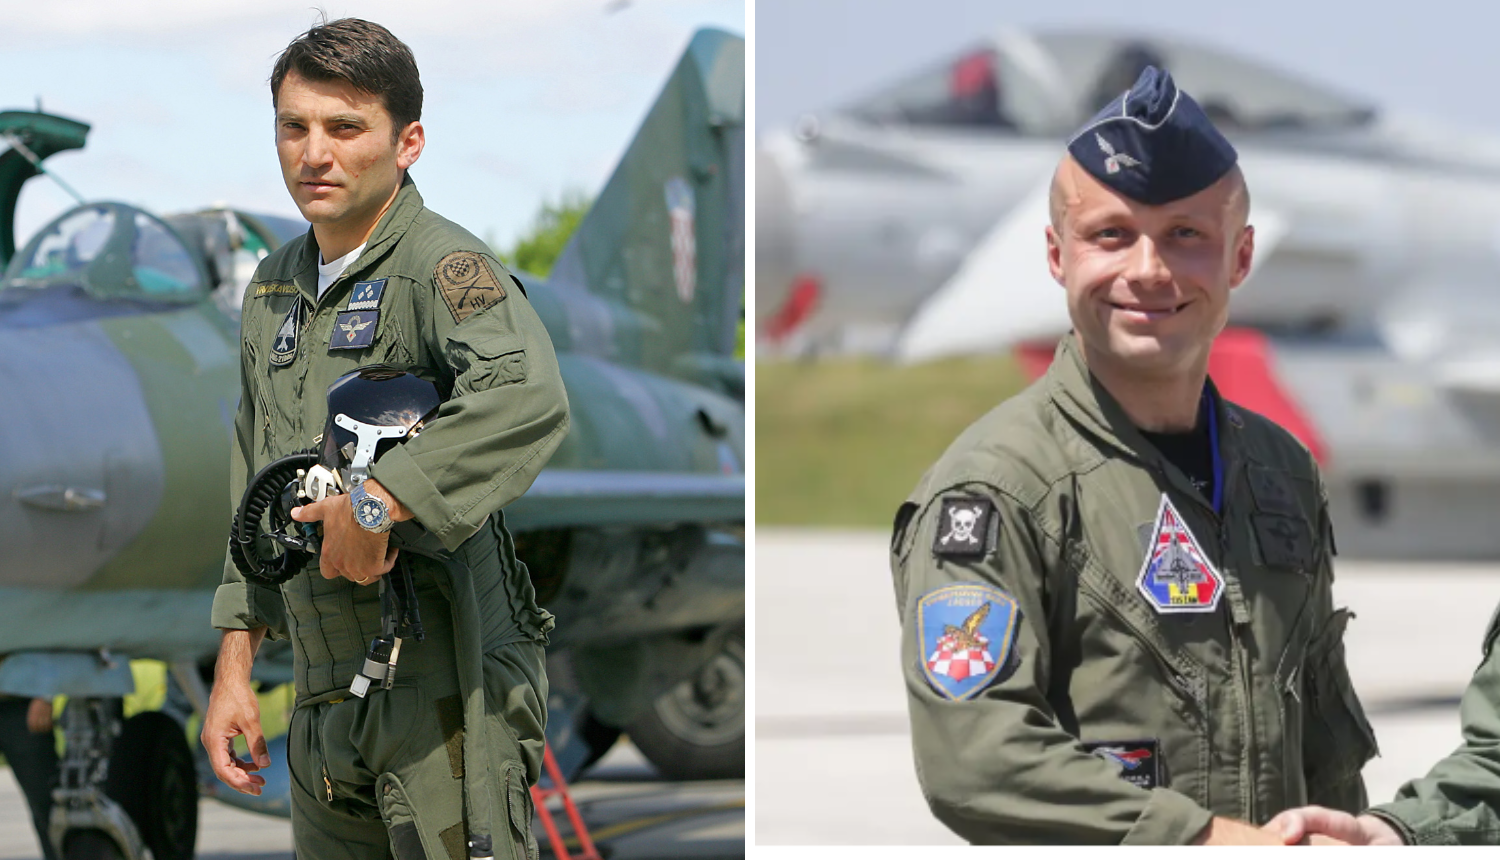 Jednog pilota srušenog MiG-a pustili doma, drugoga operirali